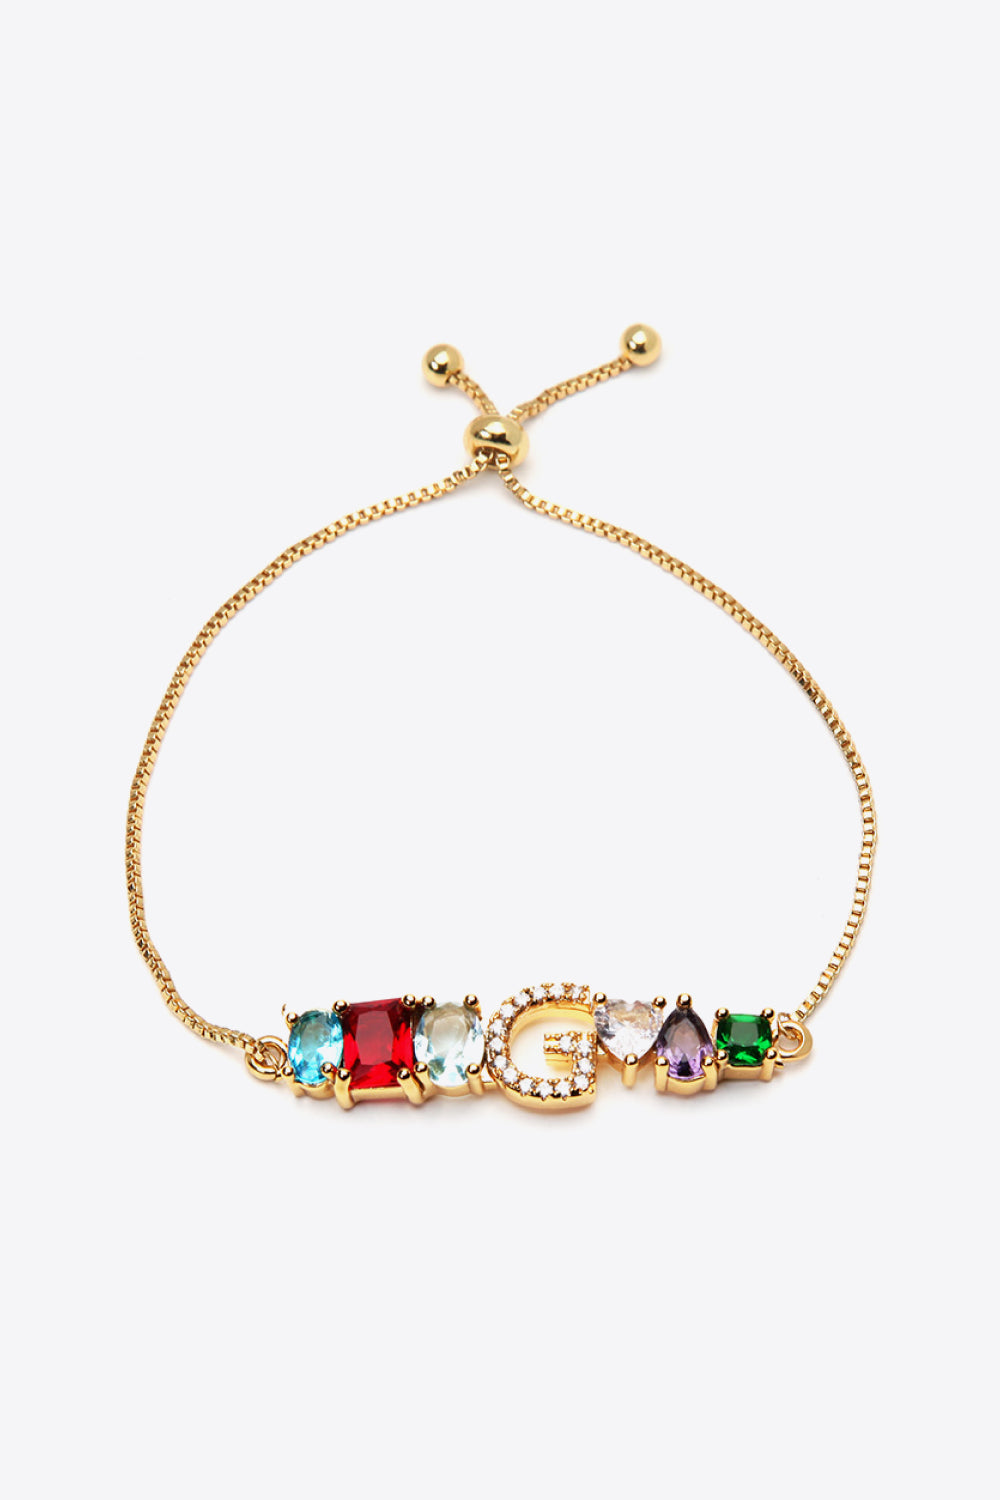 A to J Zircon Bracelet - G / One Size - Women’s Jewelry - Bracelets - 19 - 2024